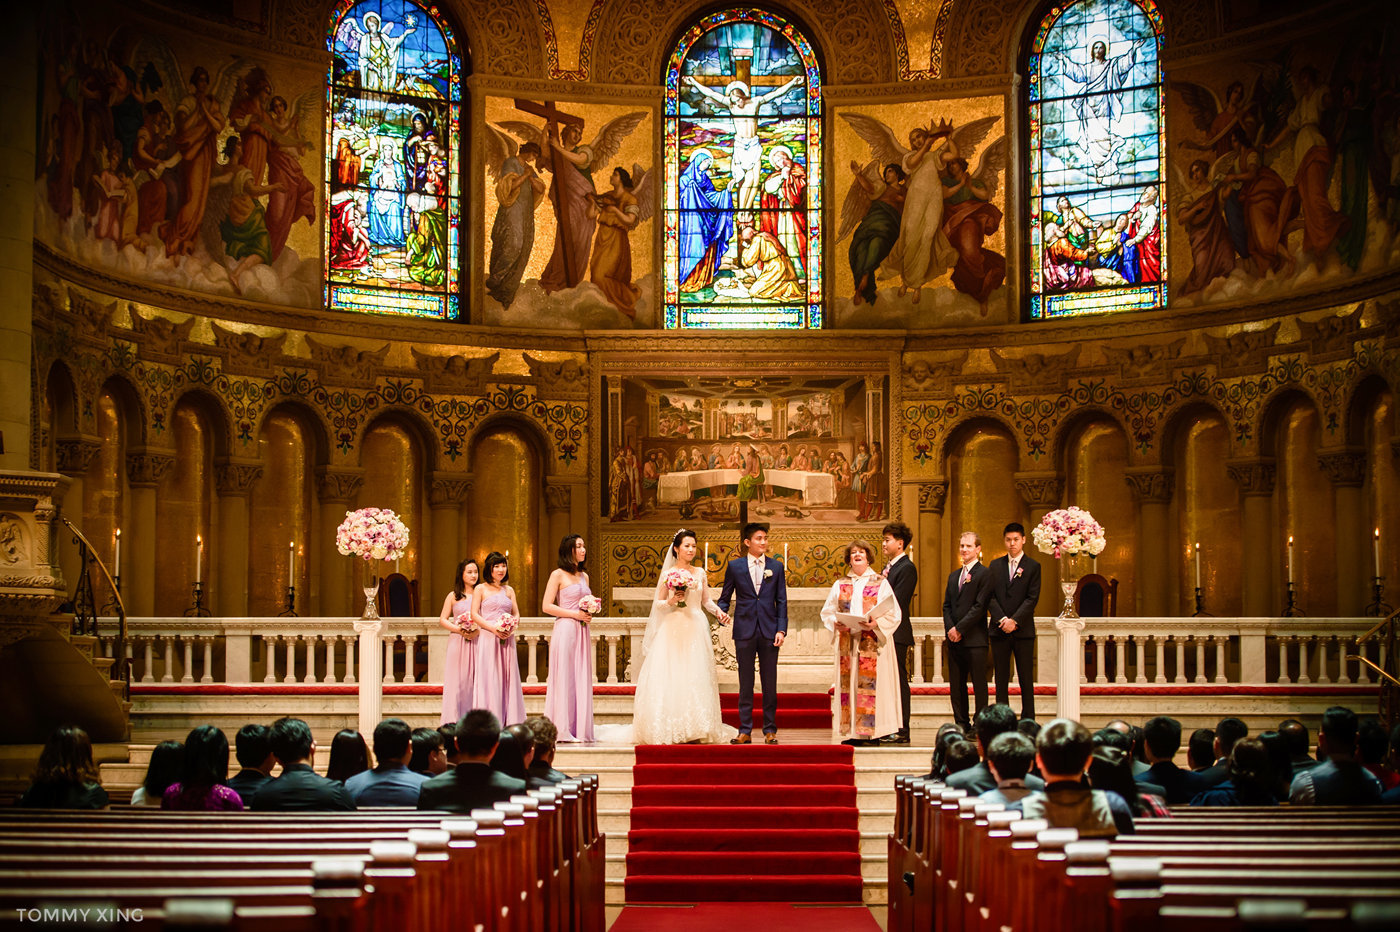 stanford memorial church wedding 旧金山湾区斯坦福教堂婚礼 Tommy Xing Photography 083.jpg